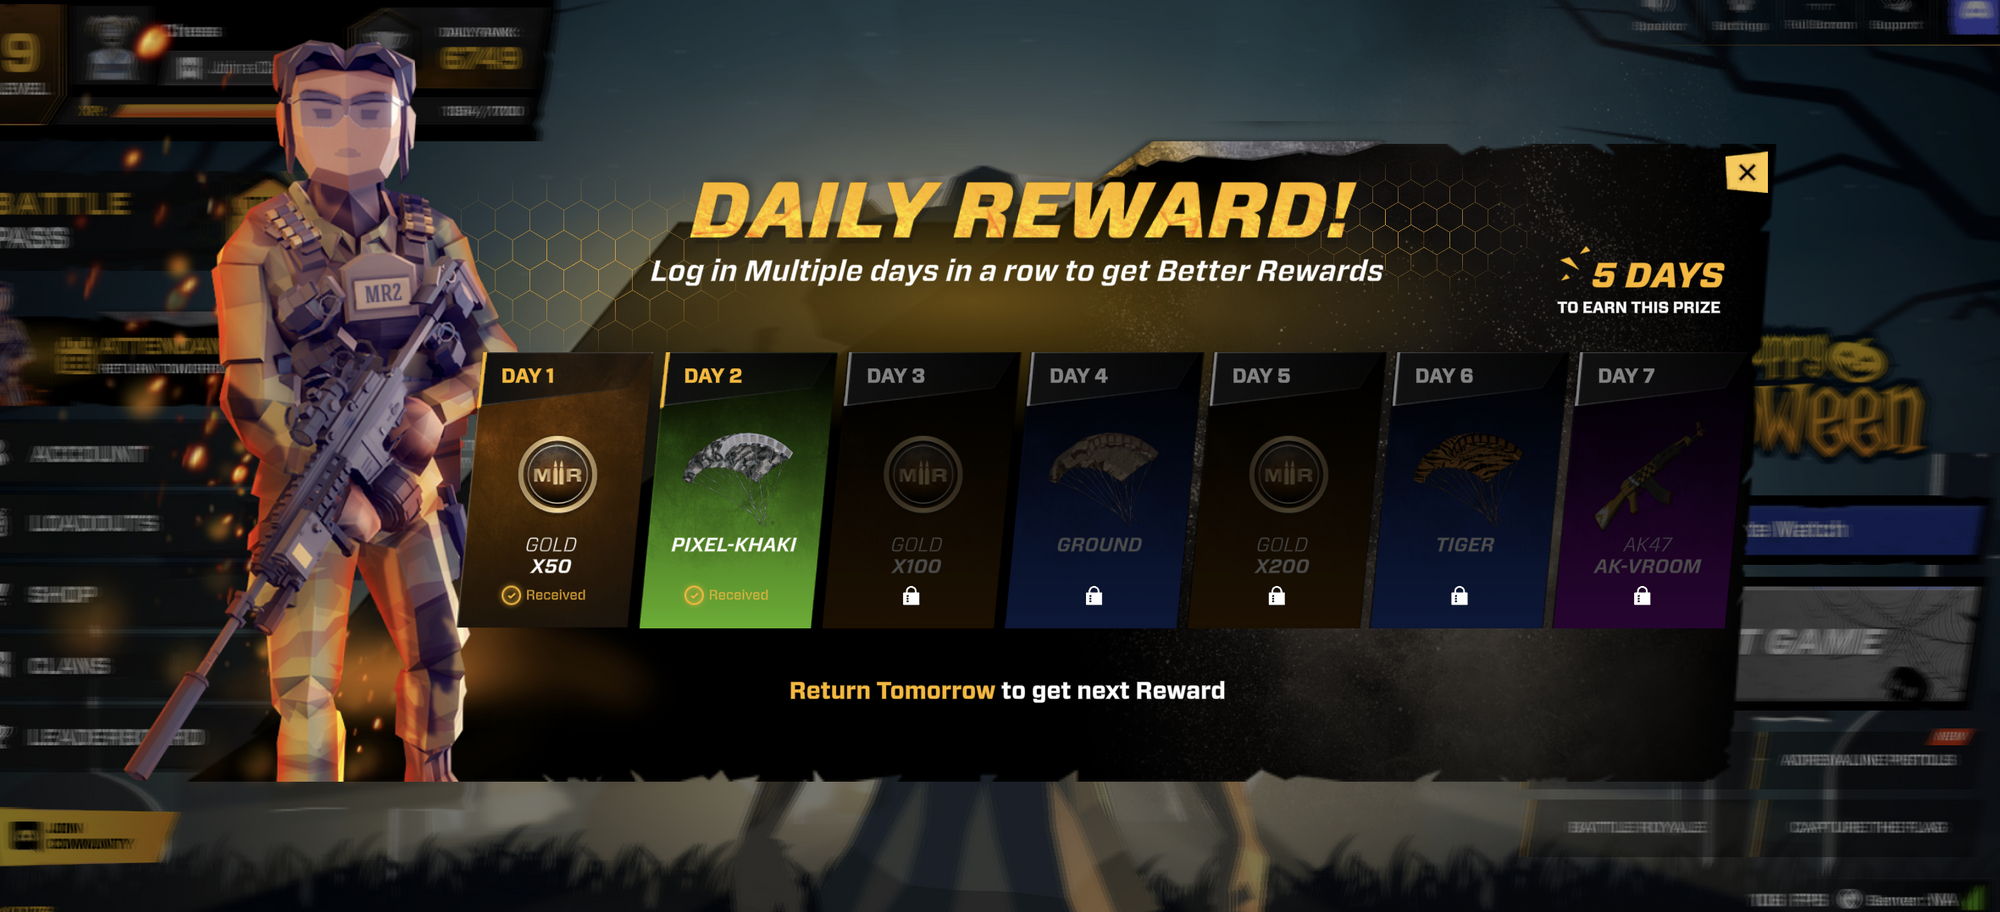 Daily reward